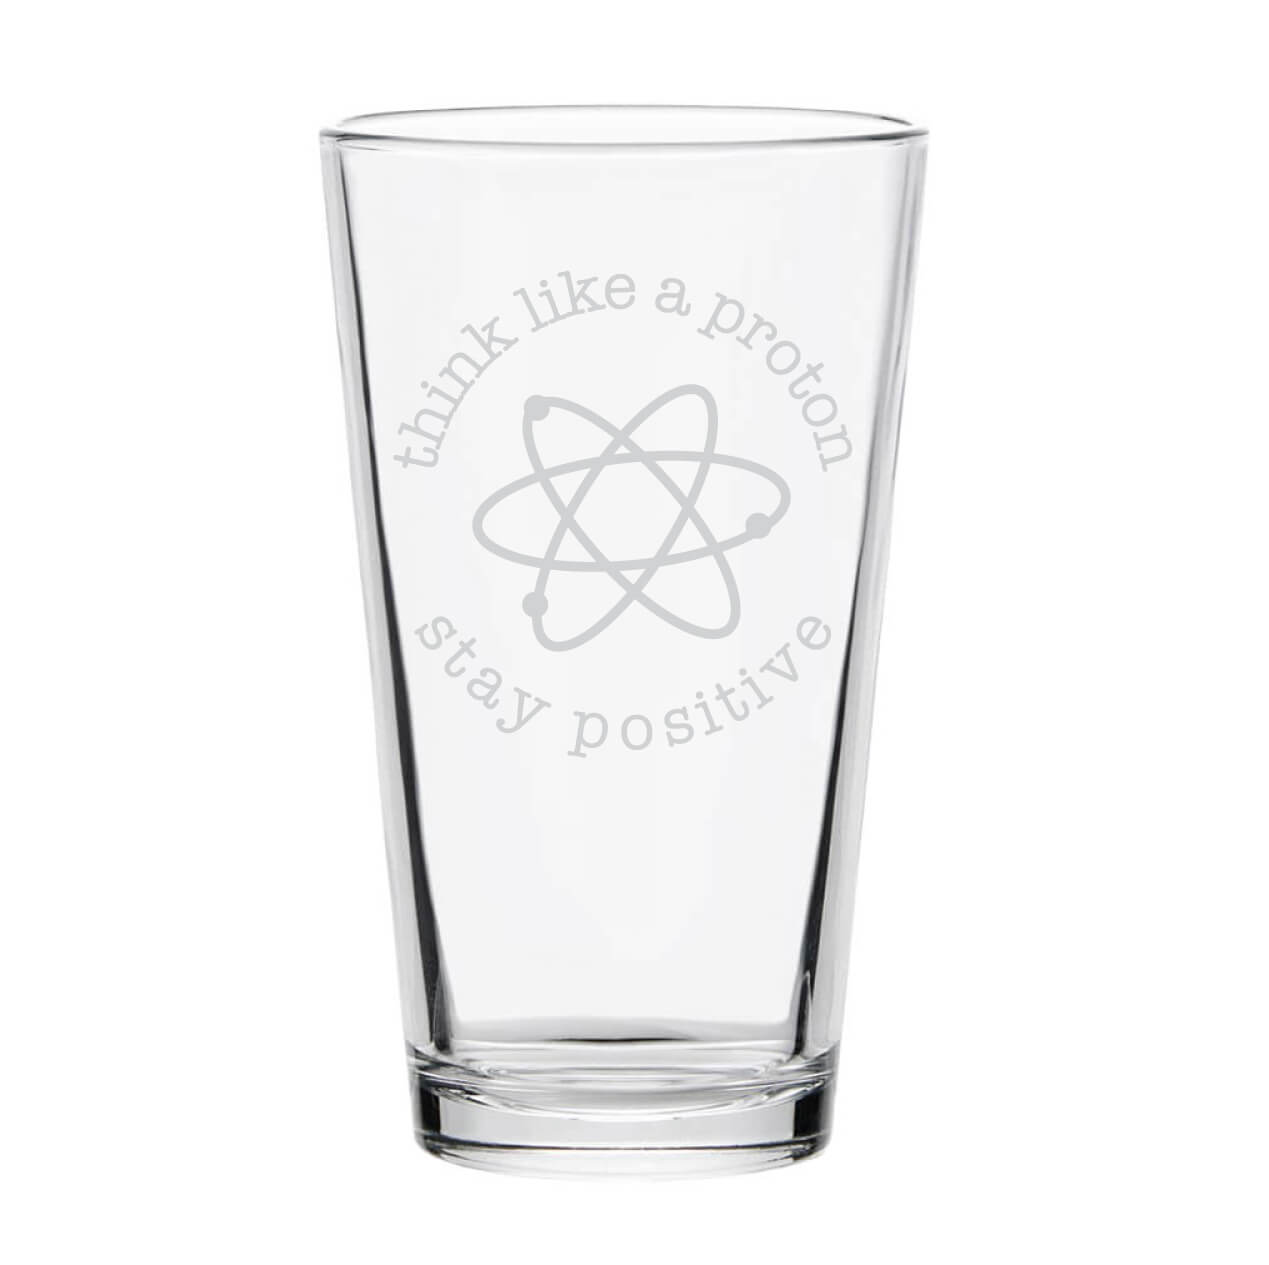 Think Like a Proton Pint Glass